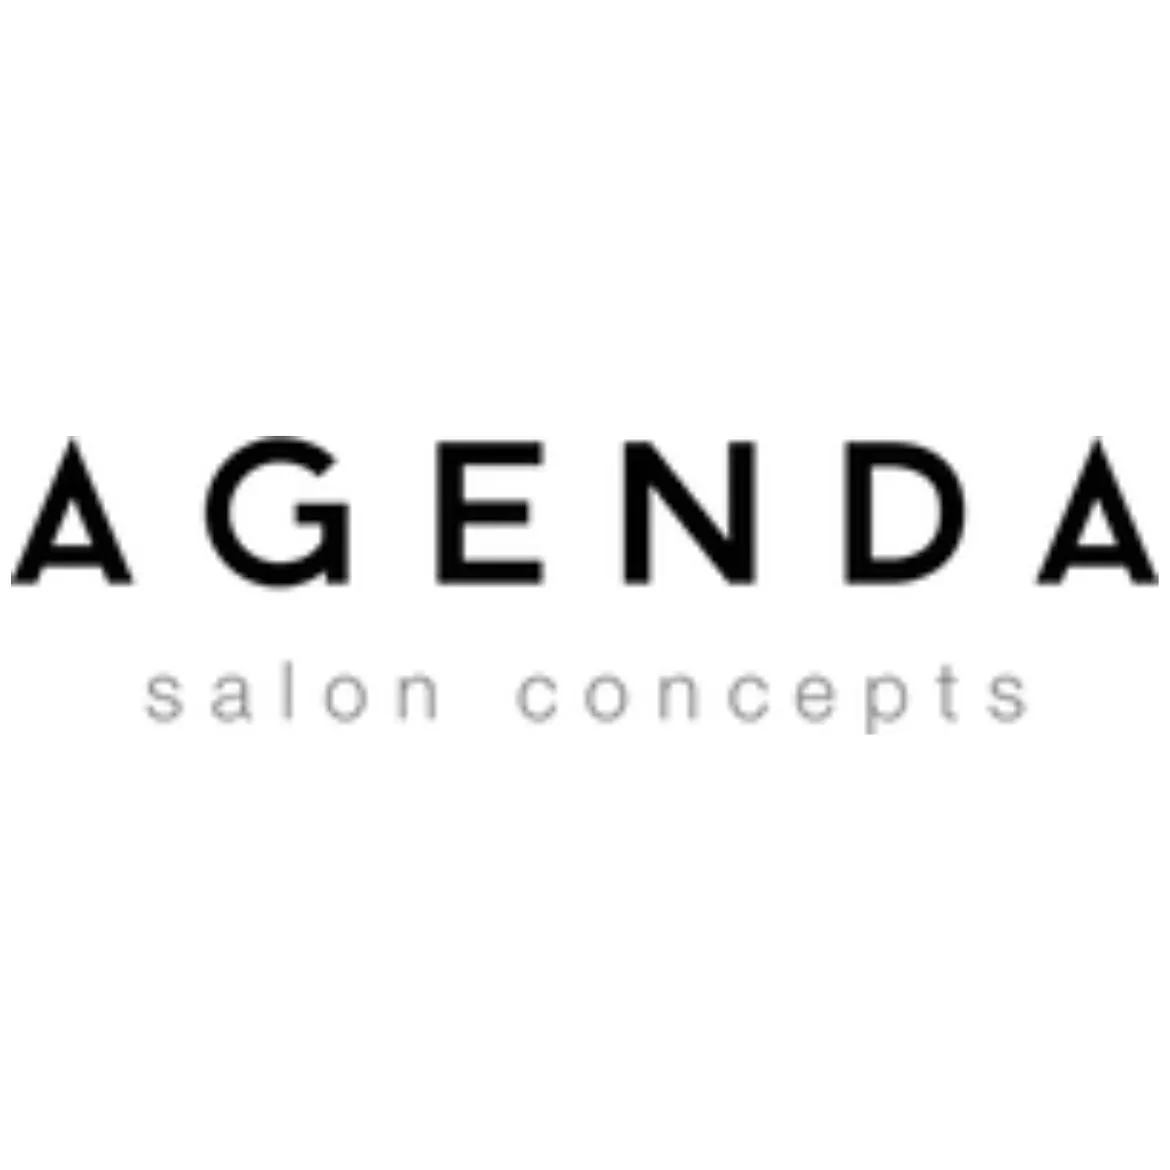 Agenda Salon Concepts